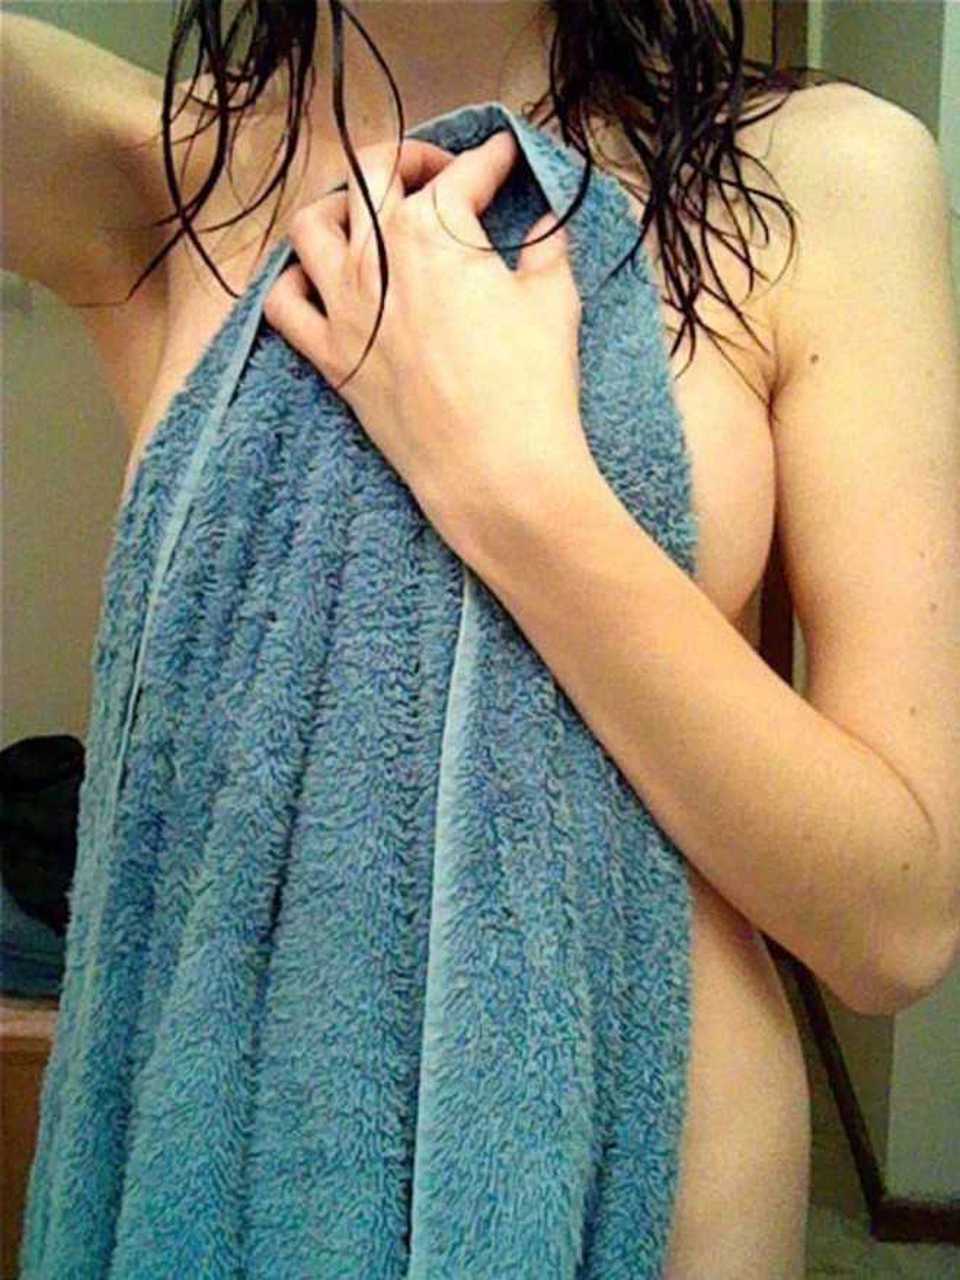 Sesso hardcore nella doccia